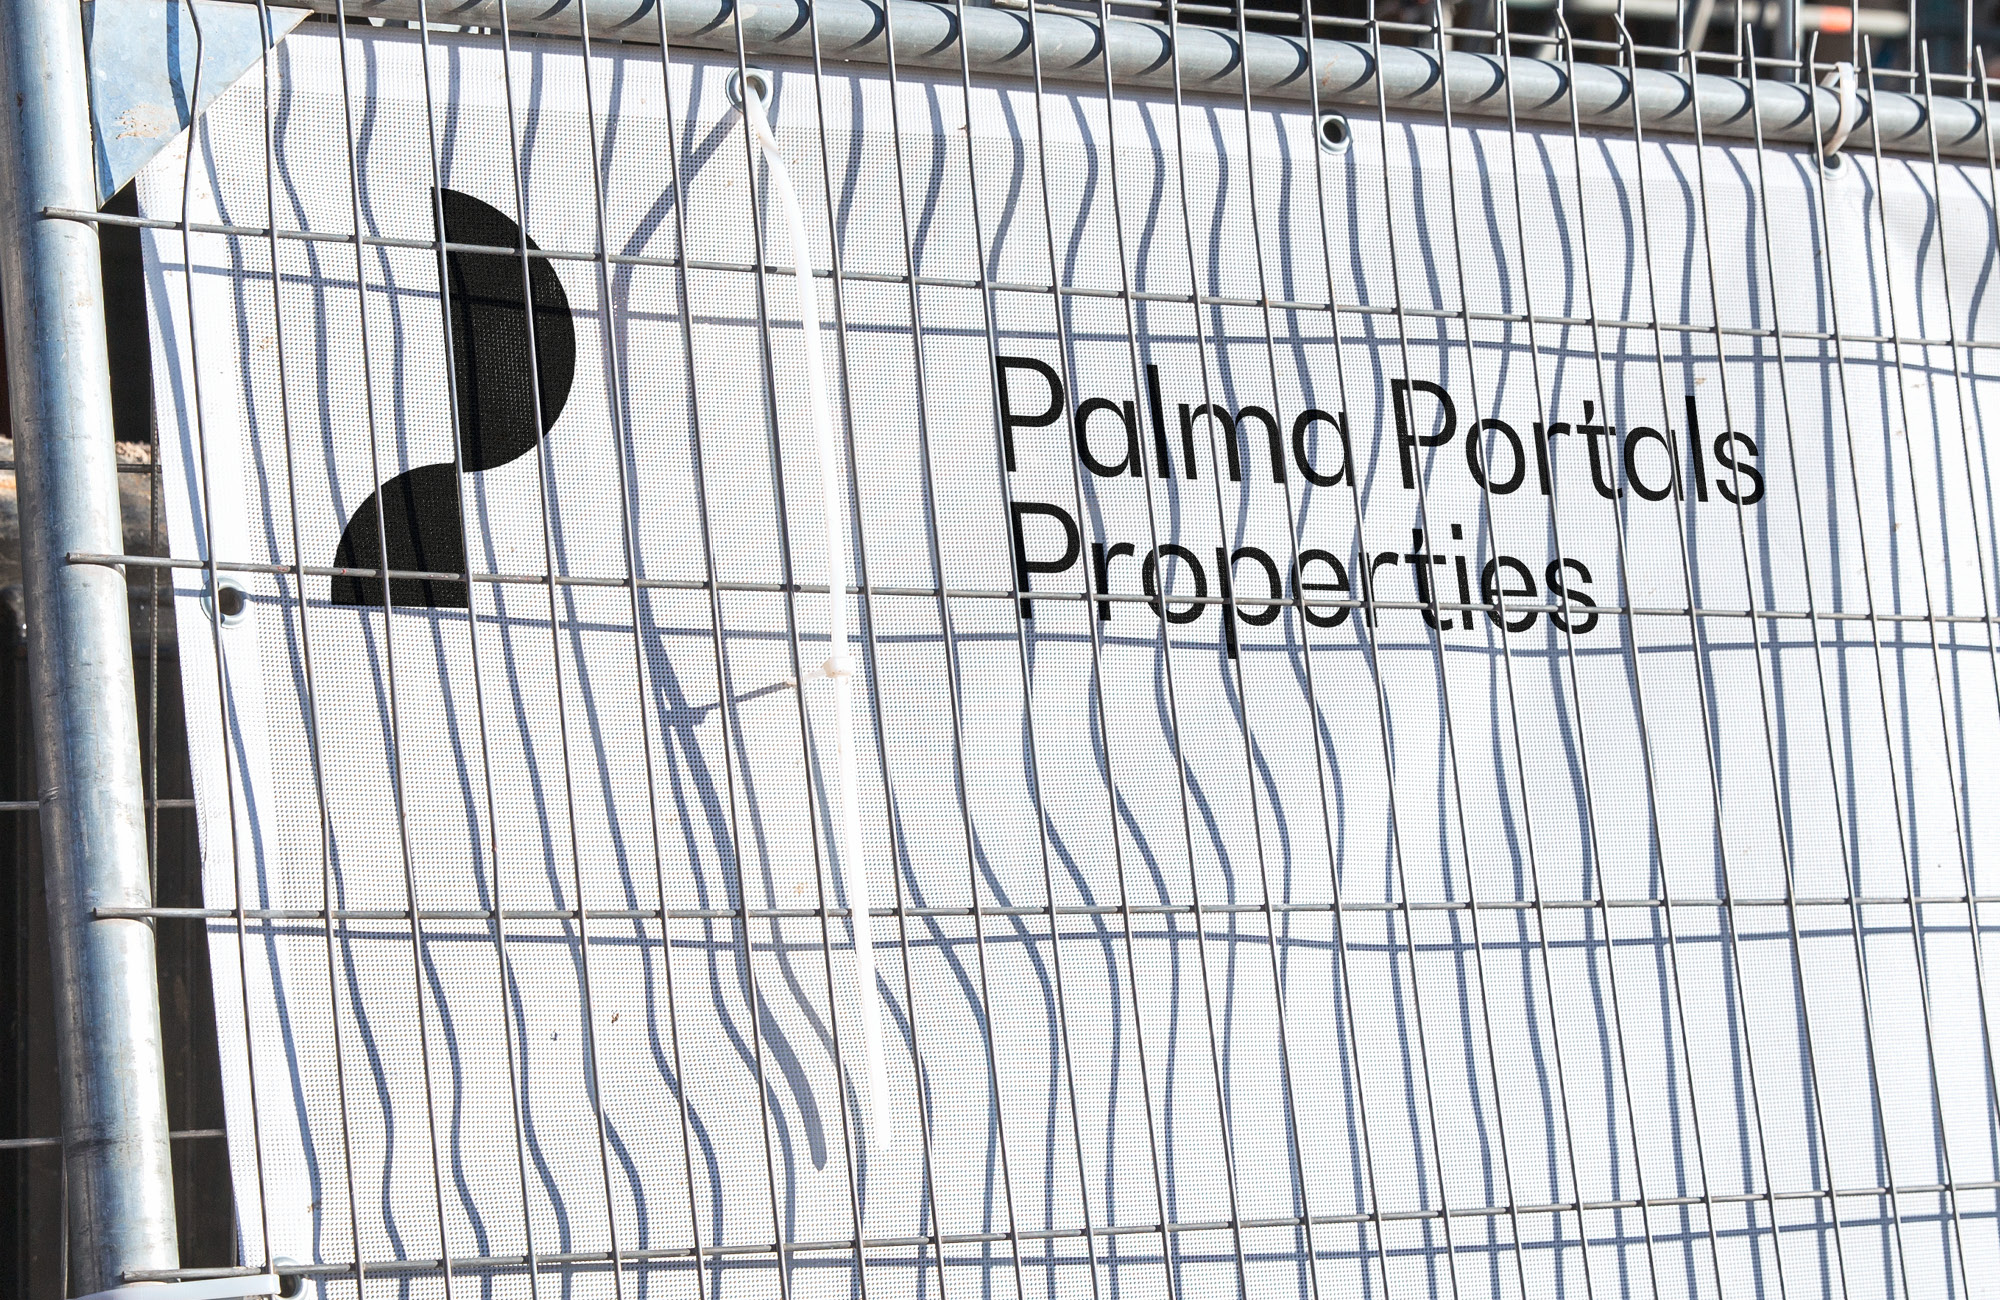 Palma Portals Properties